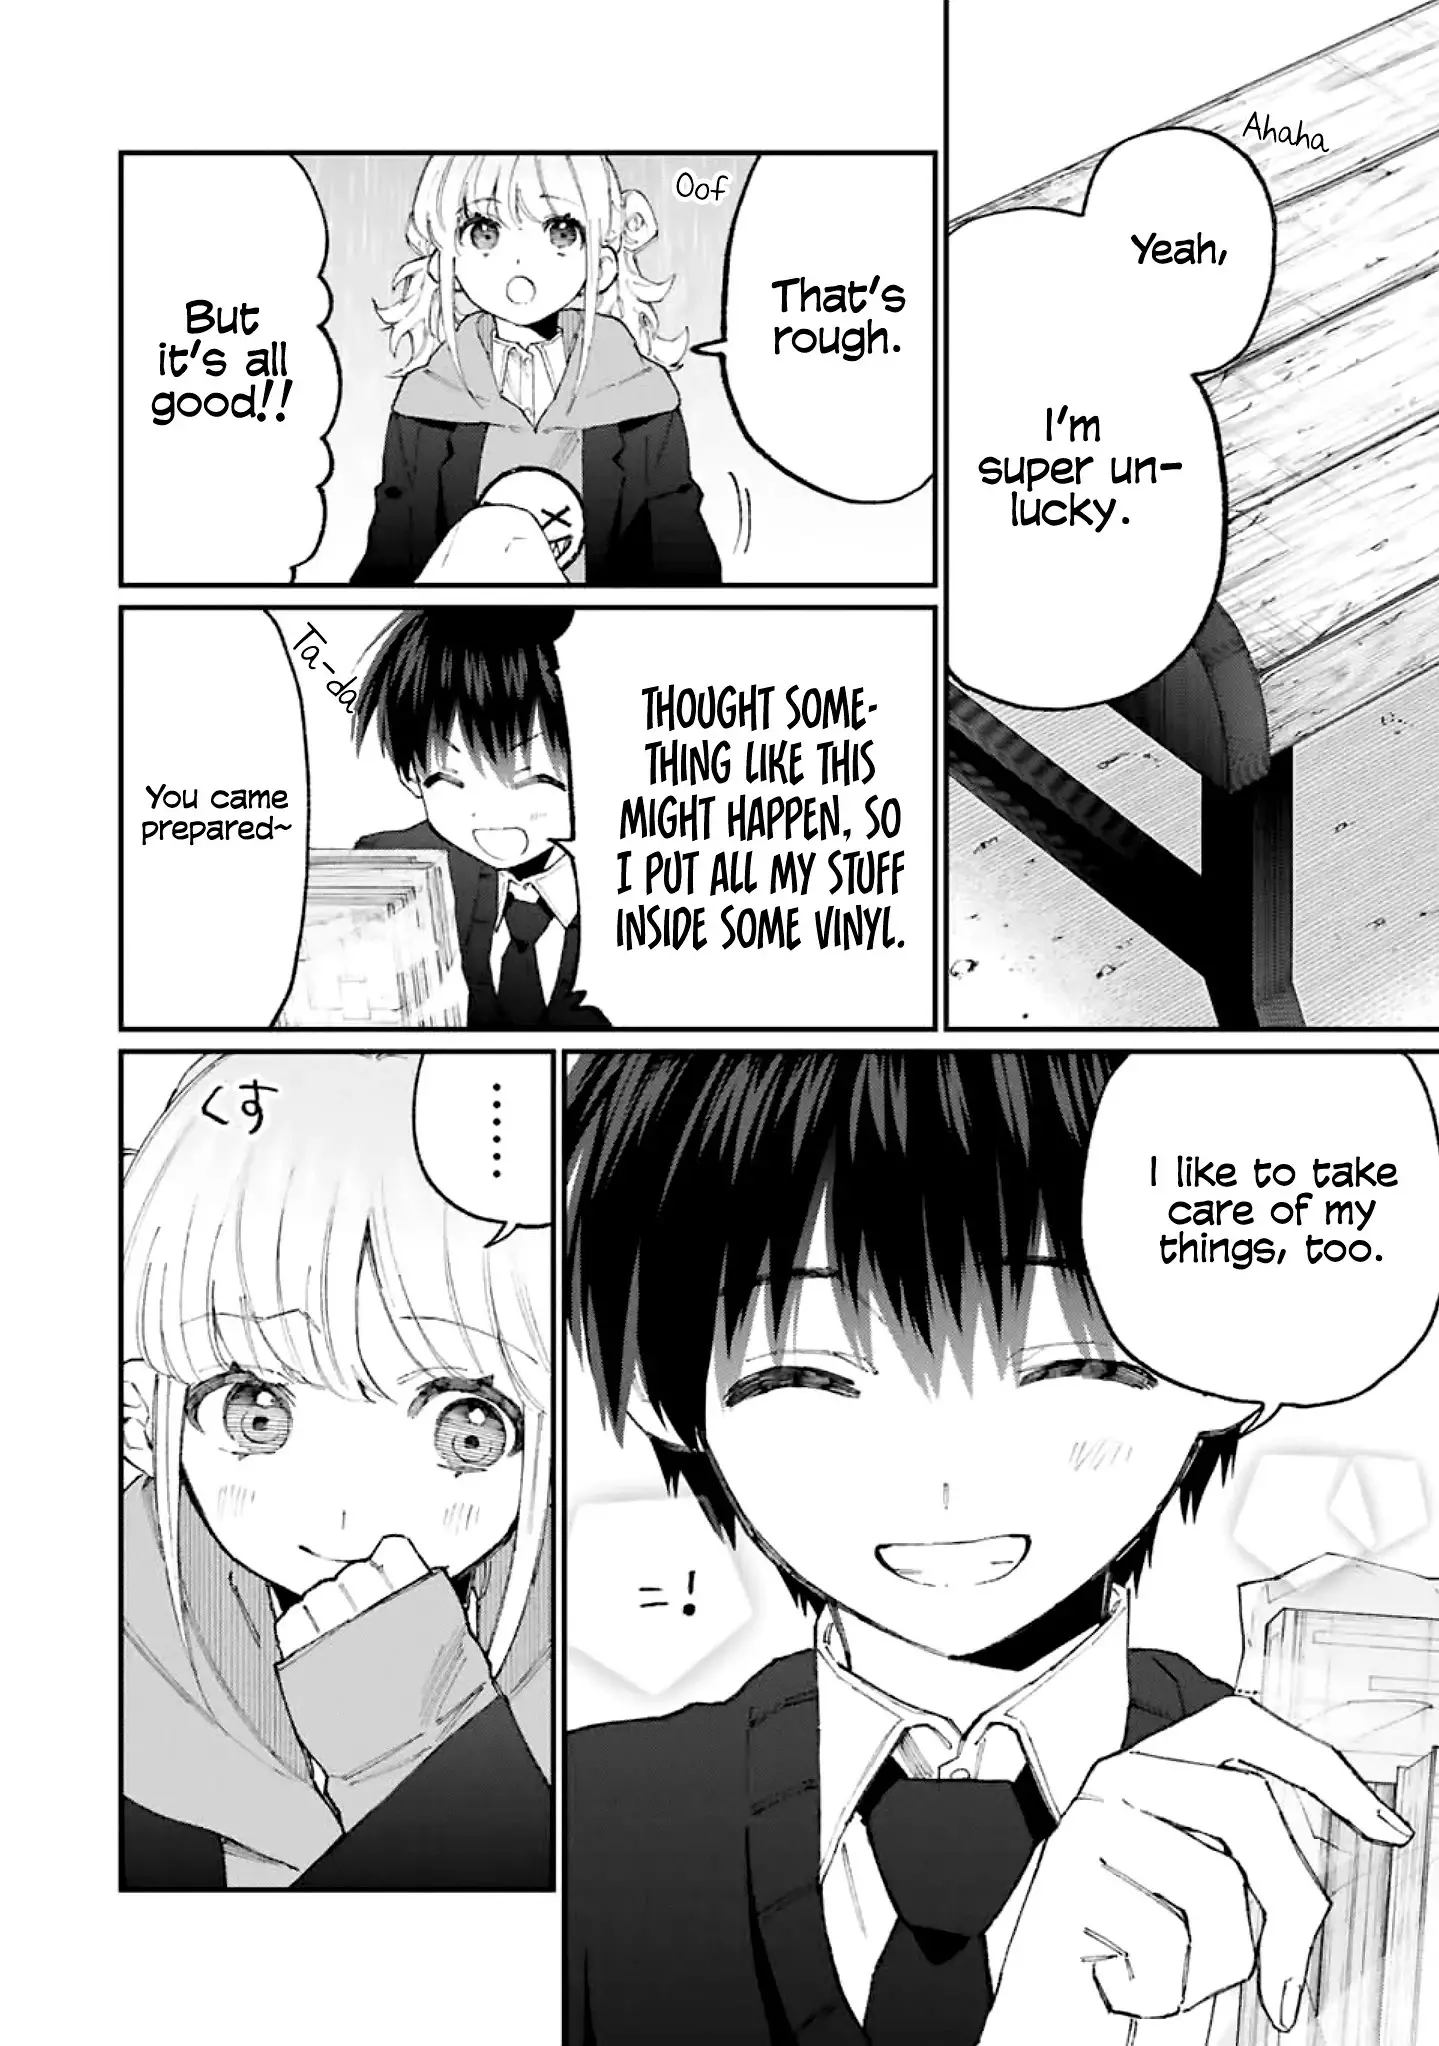 Shikimori's Not Just A Cutie - 127 page 9